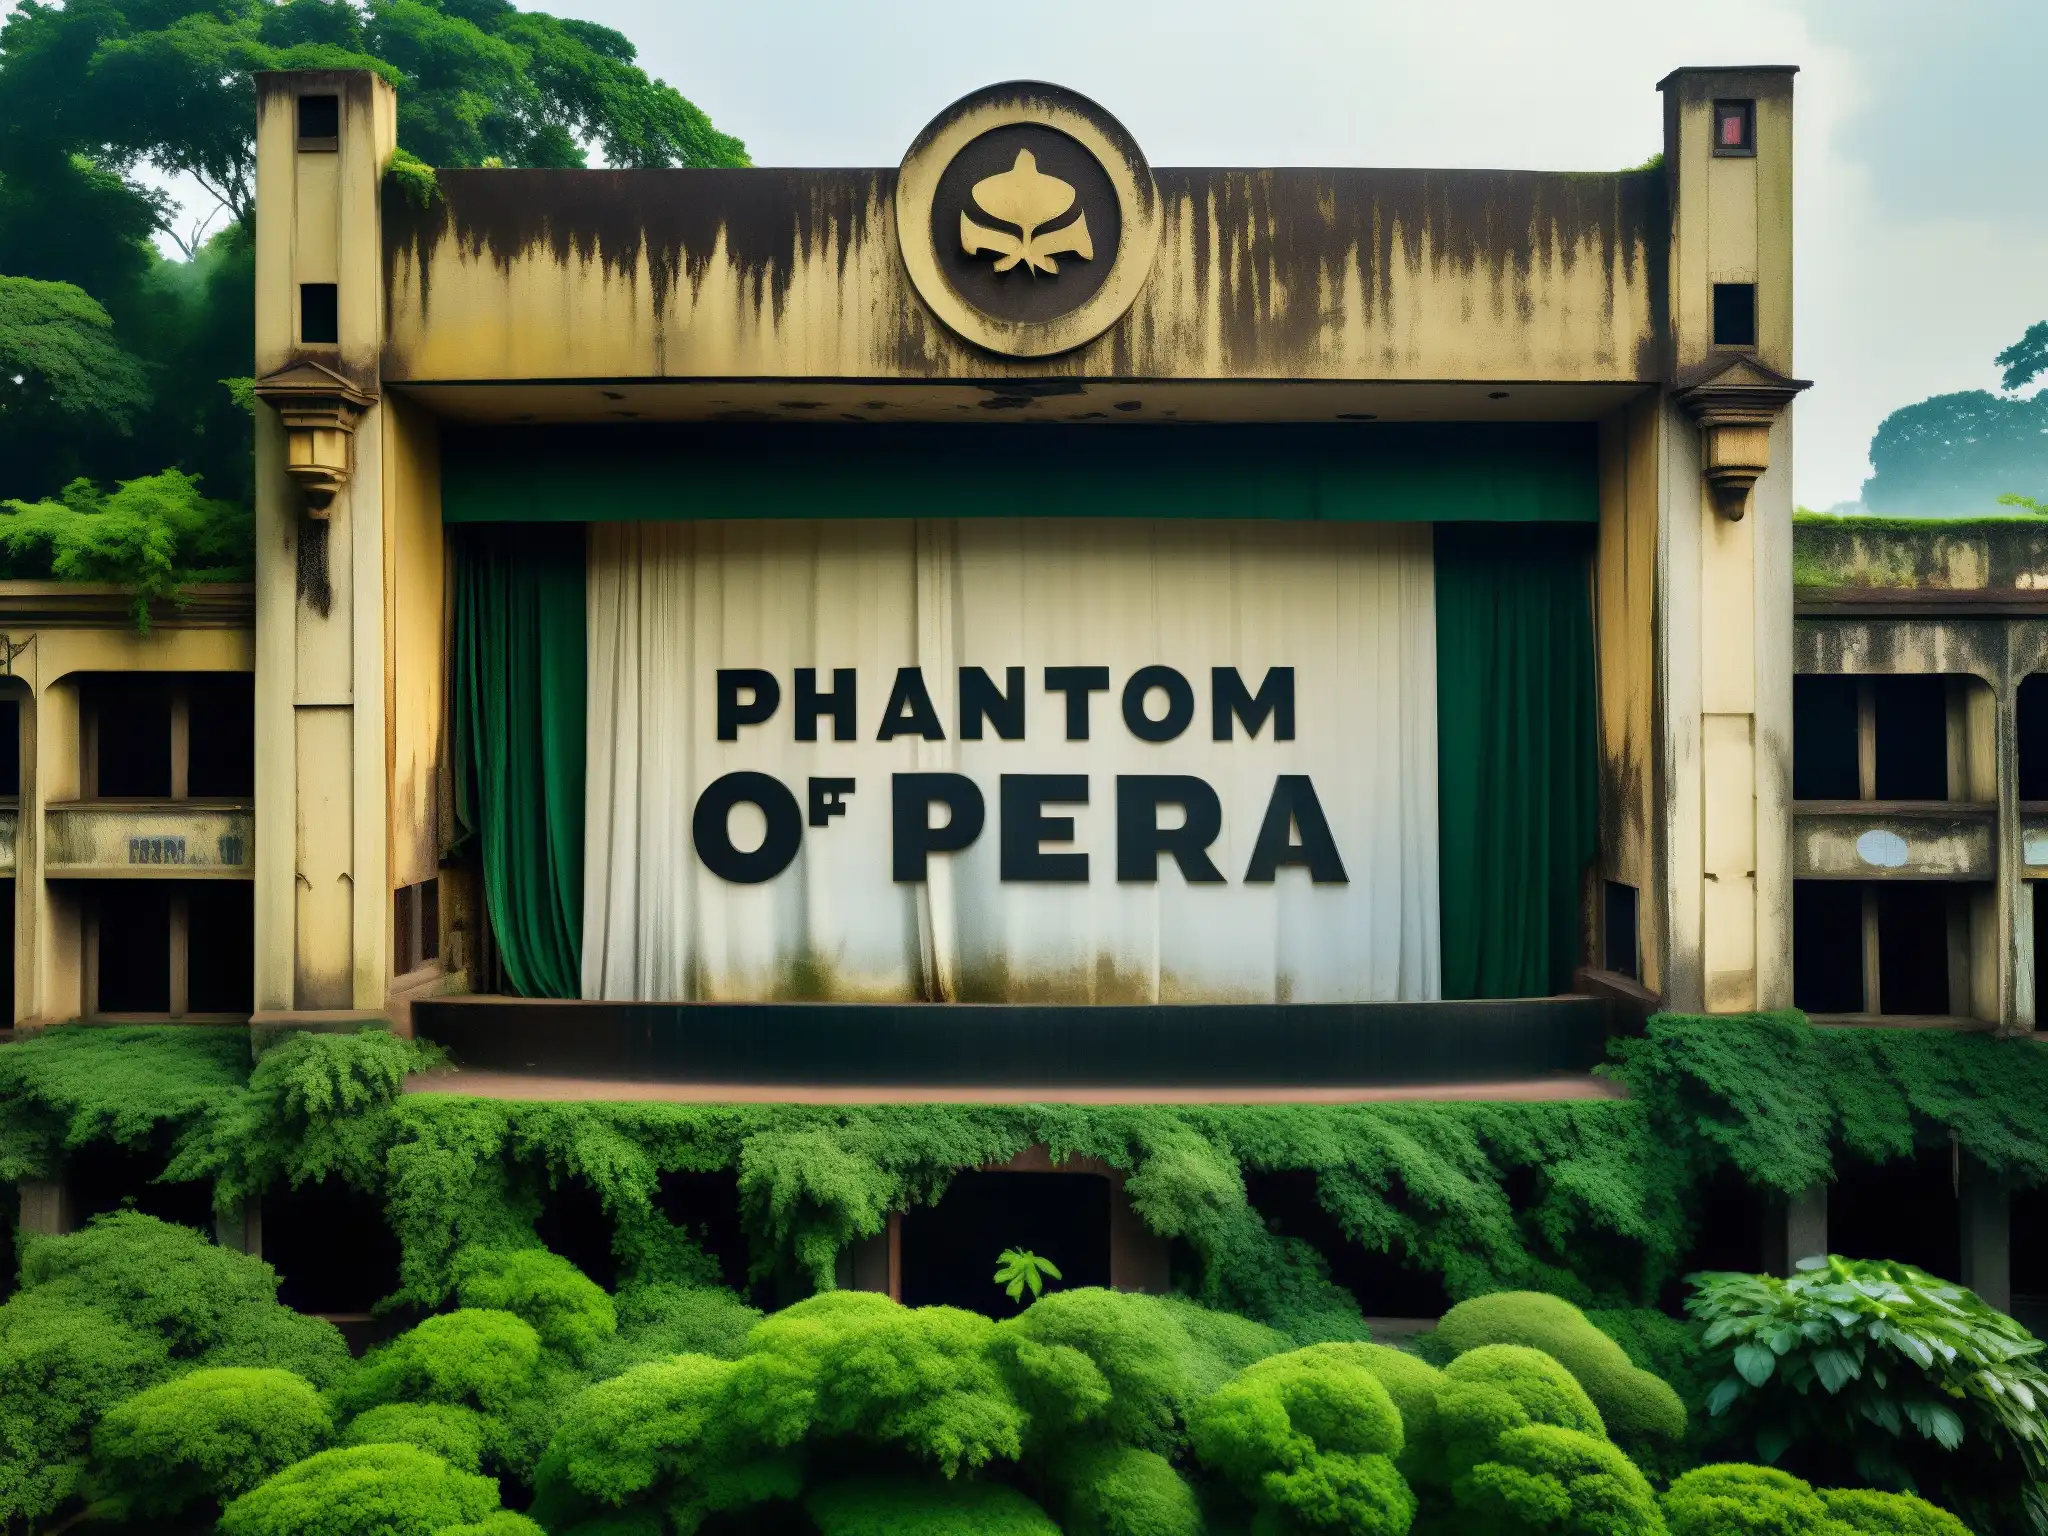 Teatro abandonado en Bangladesh con póster deteriorado del Fantasma de la Ópera, rodeado de vegetación, evocando la historia oculta del Fantasma de la Ópera en Bangladesh